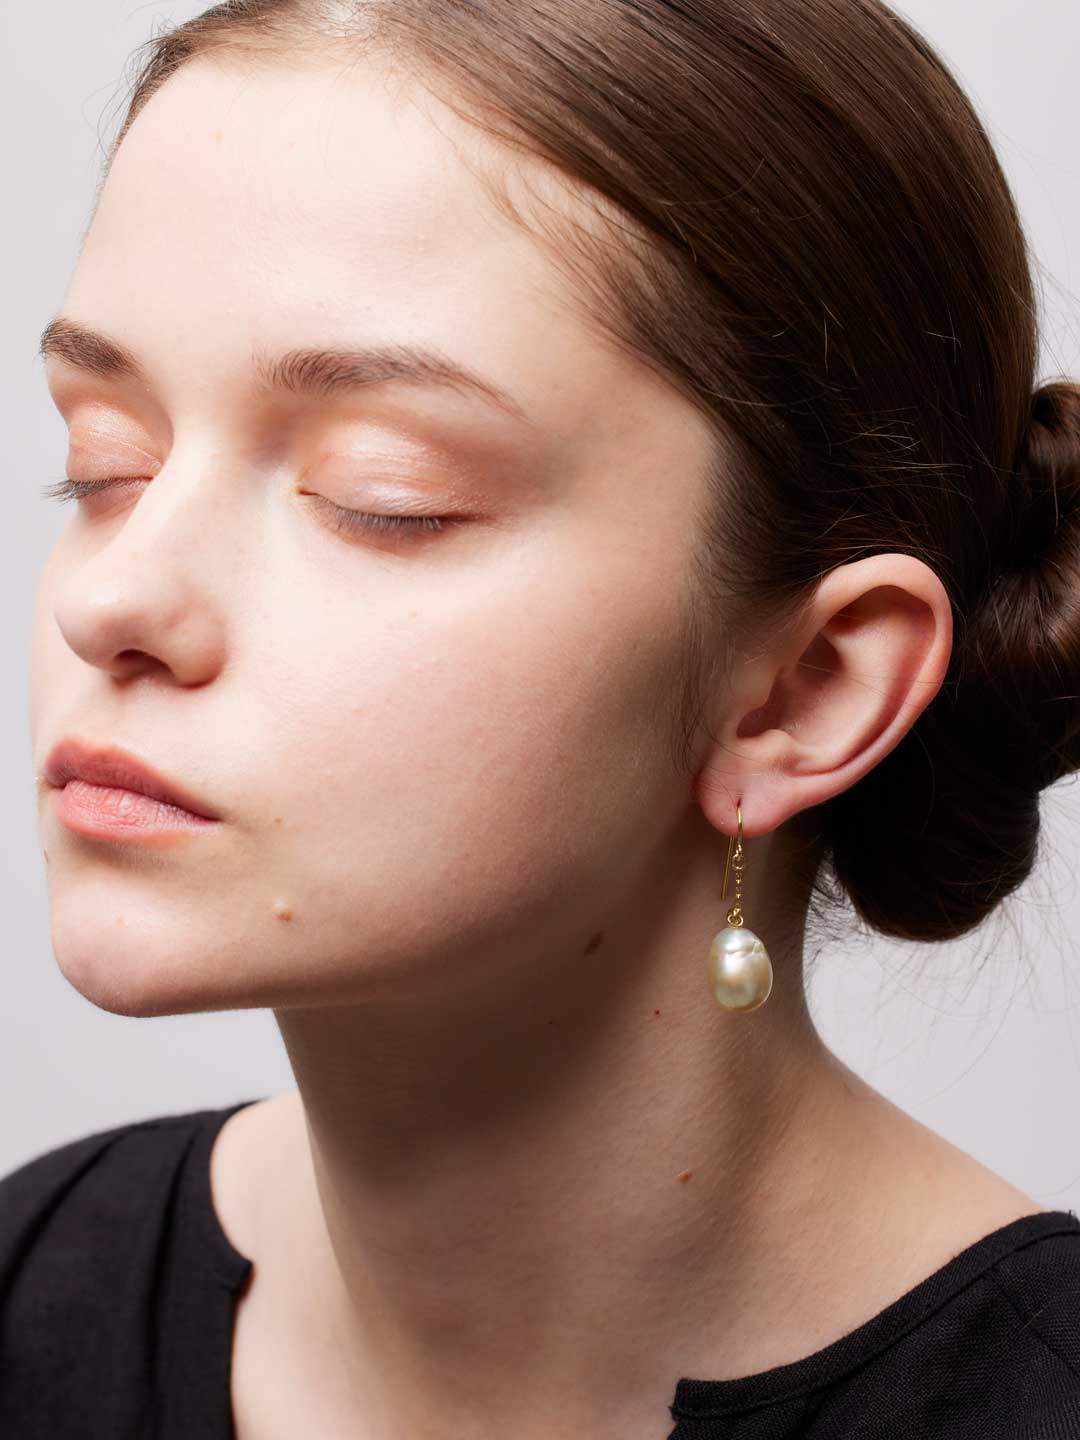 Lemonade Pearl Pierced Earring - Gold